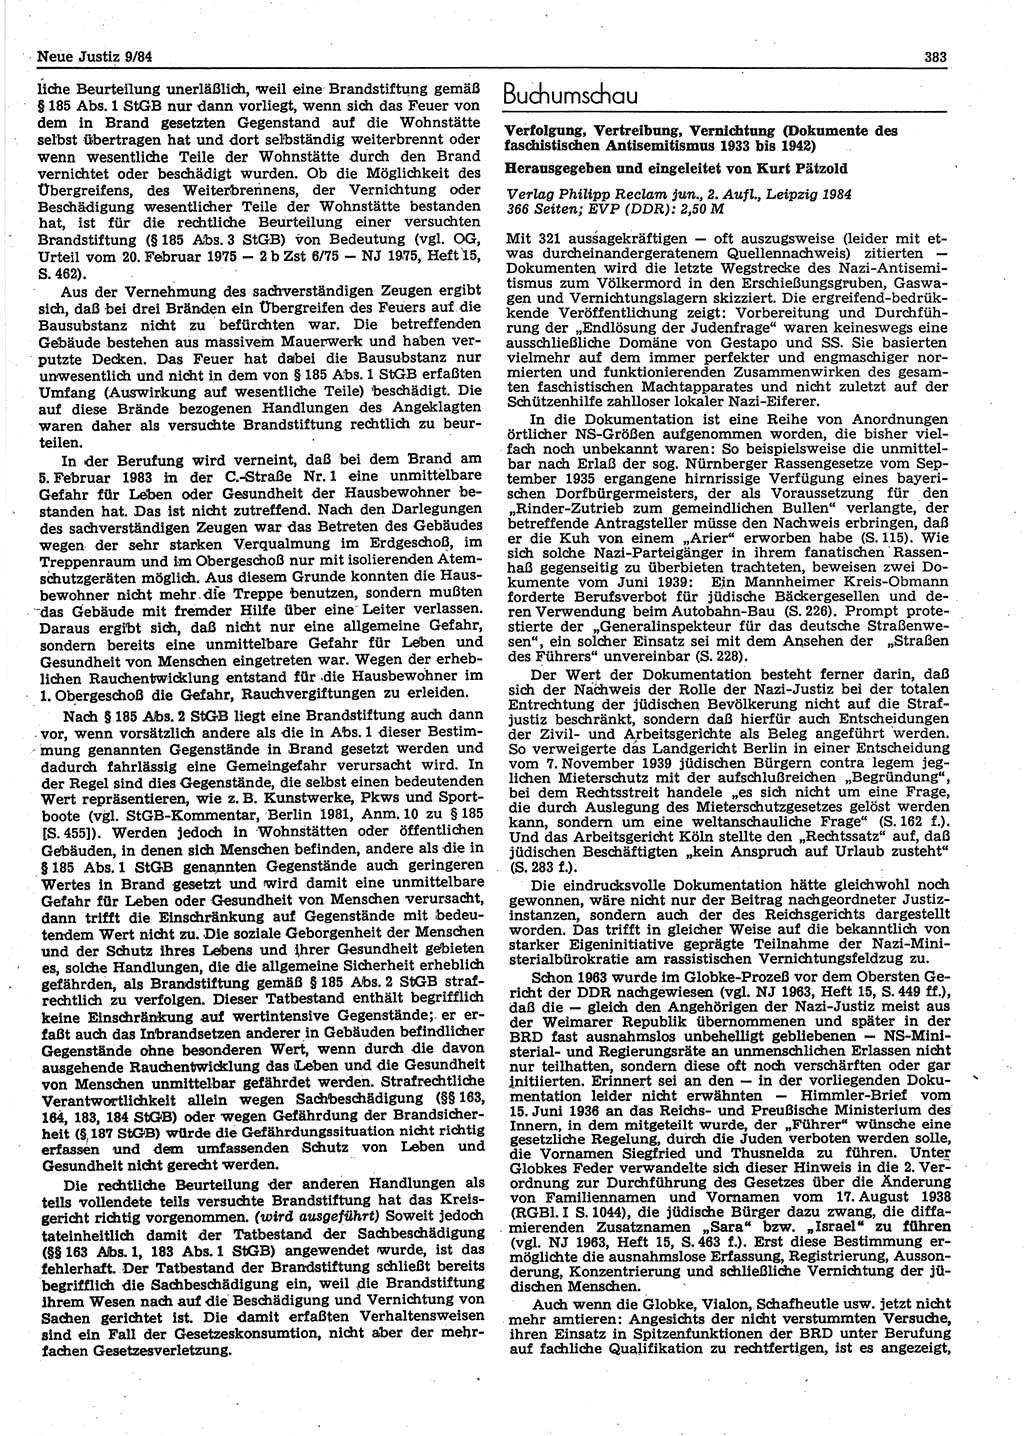 Neue Justiz (NJ), Zeitschrift für sozialistisches Recht und Gesetzlichkeit [Deutsche Demokratische Republik (DDR)], 38. Jahrgang 1984, Seite 383 (NJ DDR 1984, S. 383)